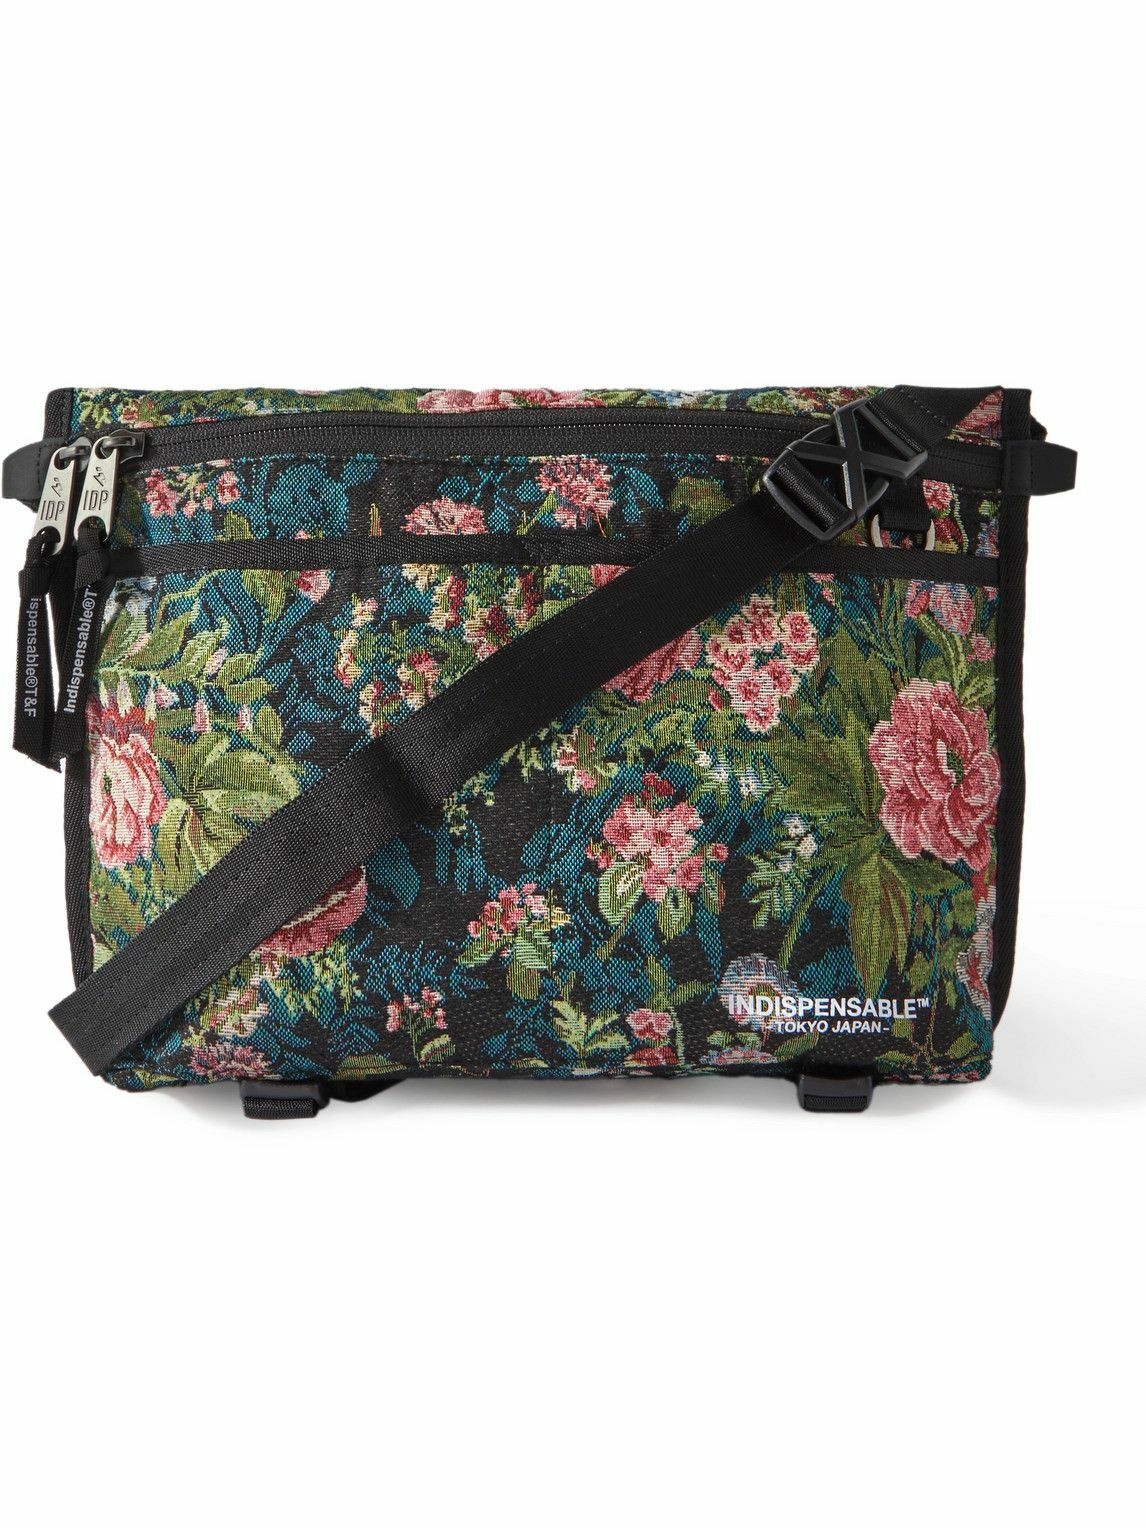 Photo: Indispensable - Logo-Print Floral-Brocade Messenger Bag